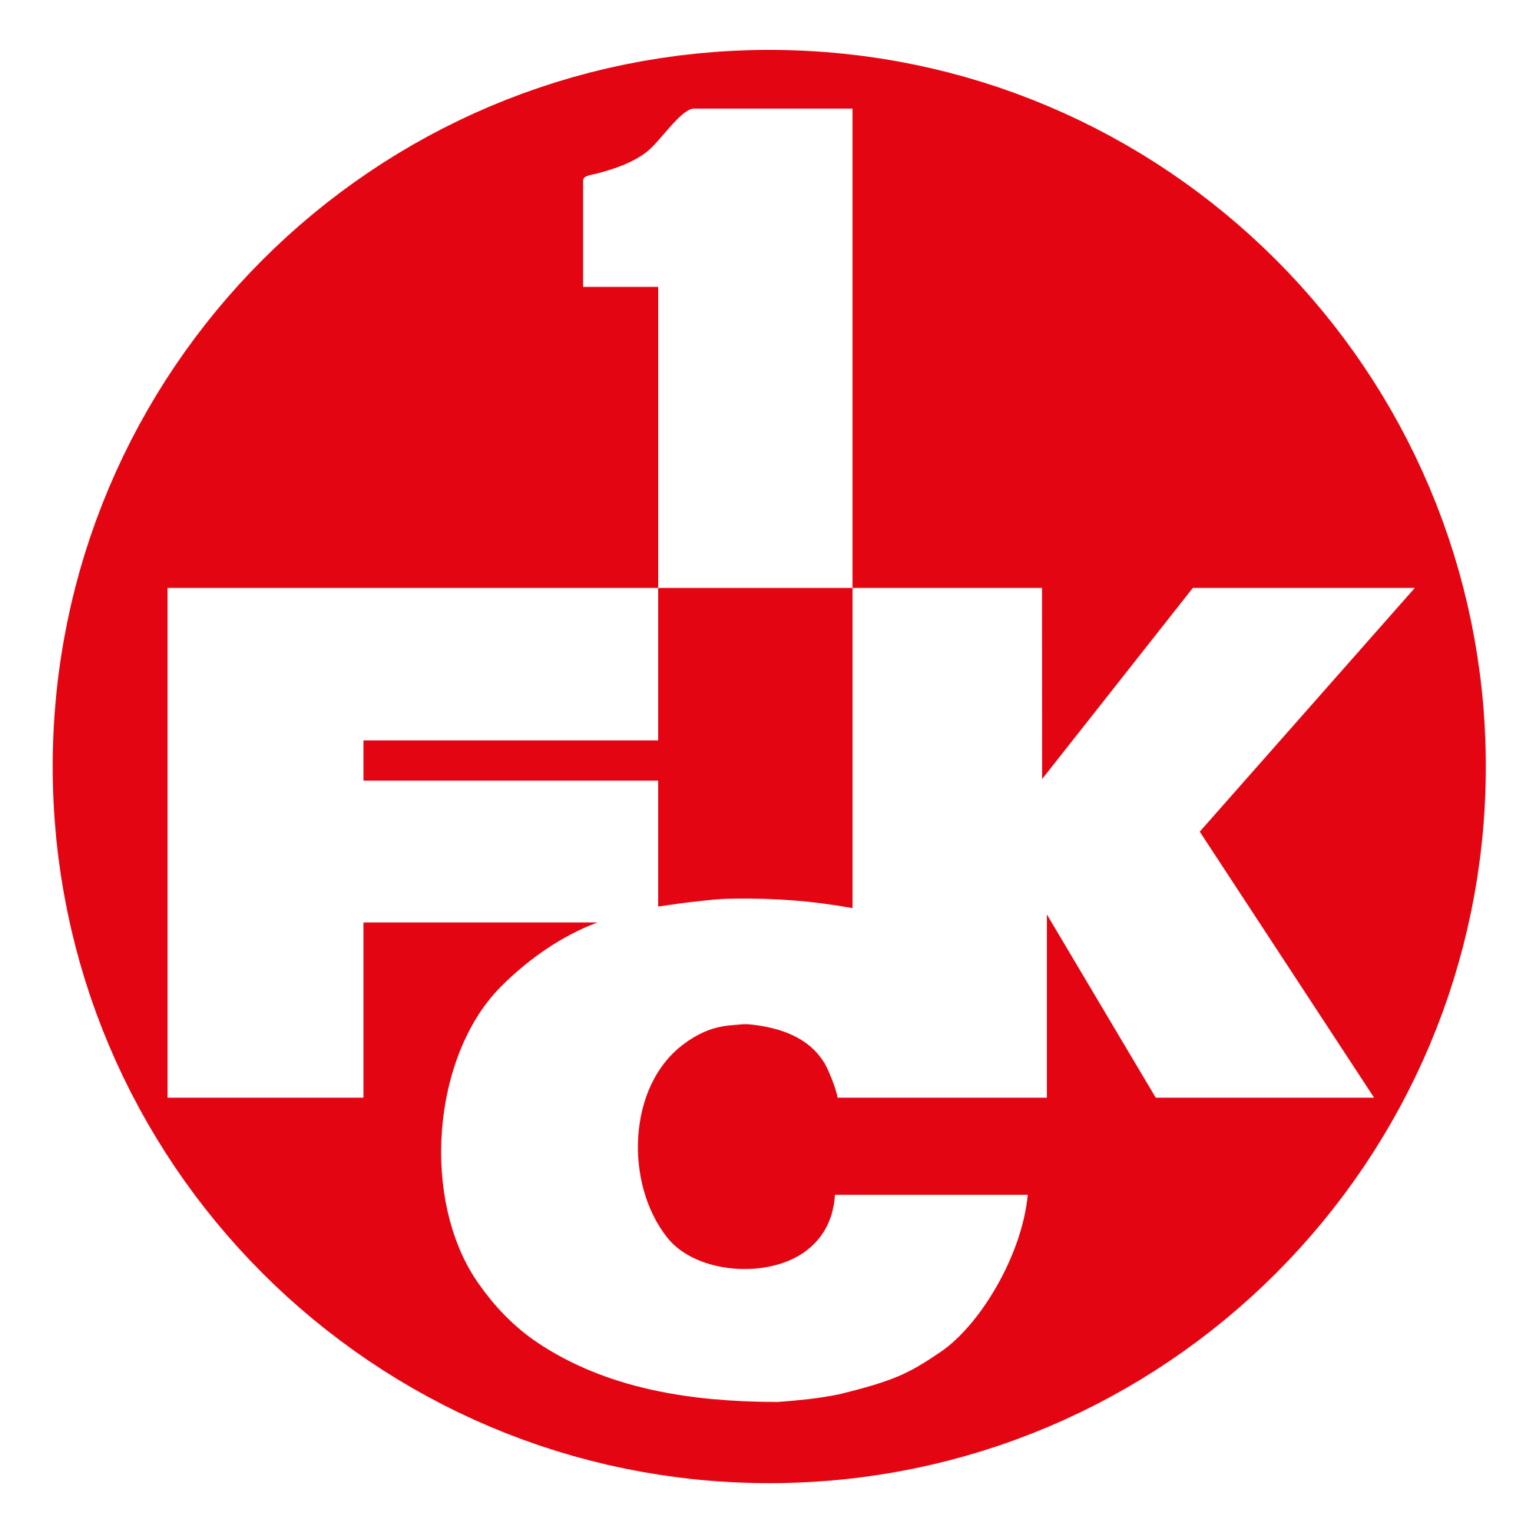 1 FC Kaiserslautern (Logo), Kunde des Unternehmens Folienritter